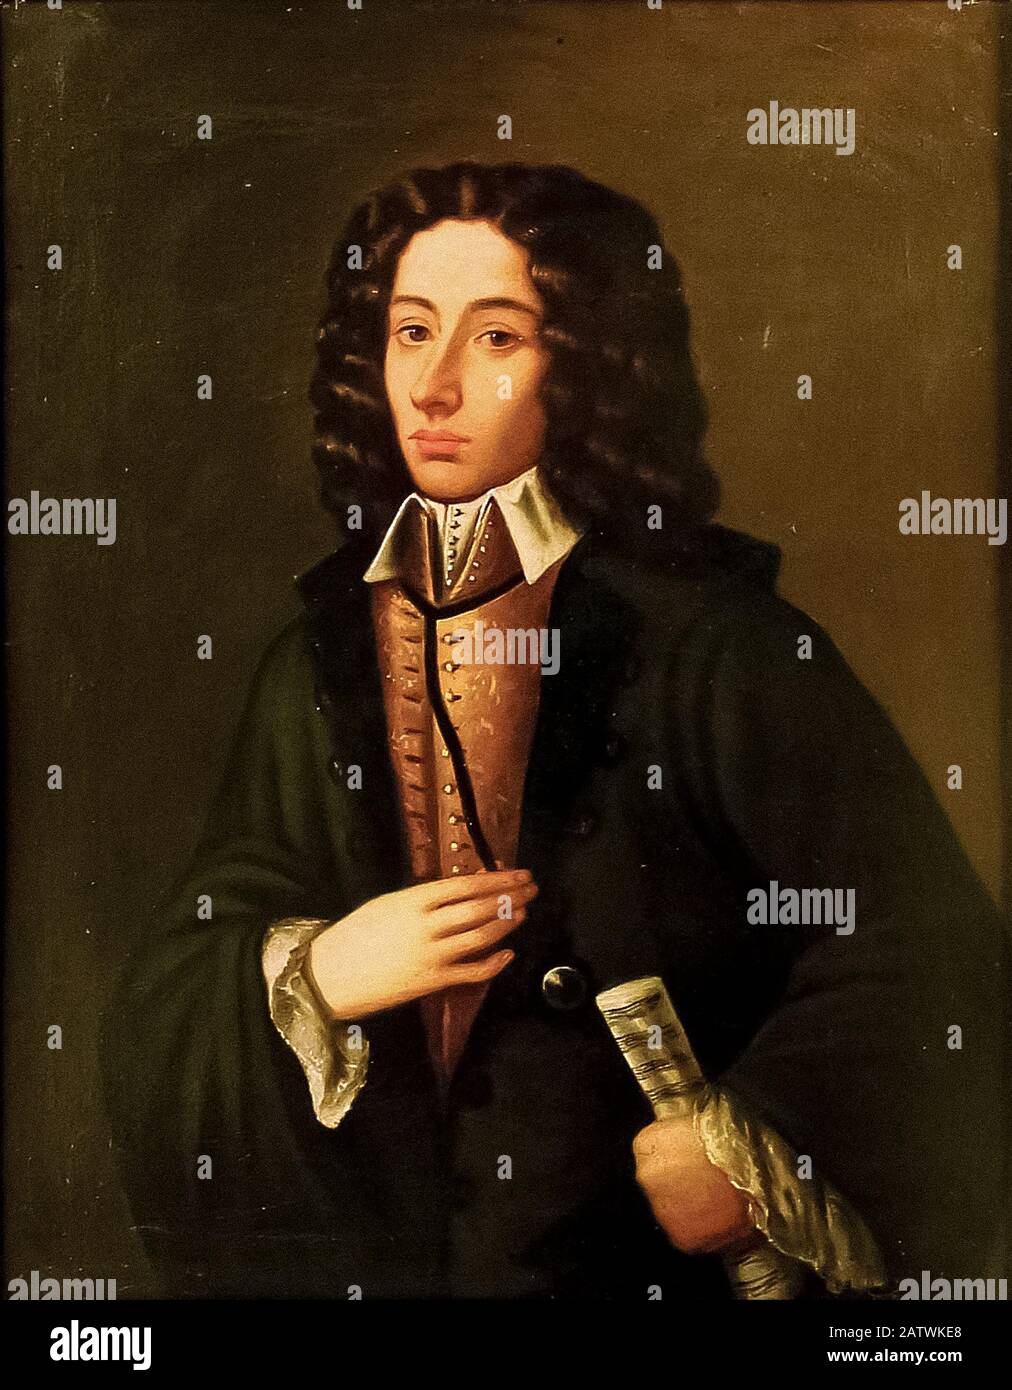 Ritratto di Giovan Battista Pergolesi (1710-1736 ) Di Domenico Antonio Vaccaro alla fine del XVIII secolo - inizio del XIX secolo Foto Stock